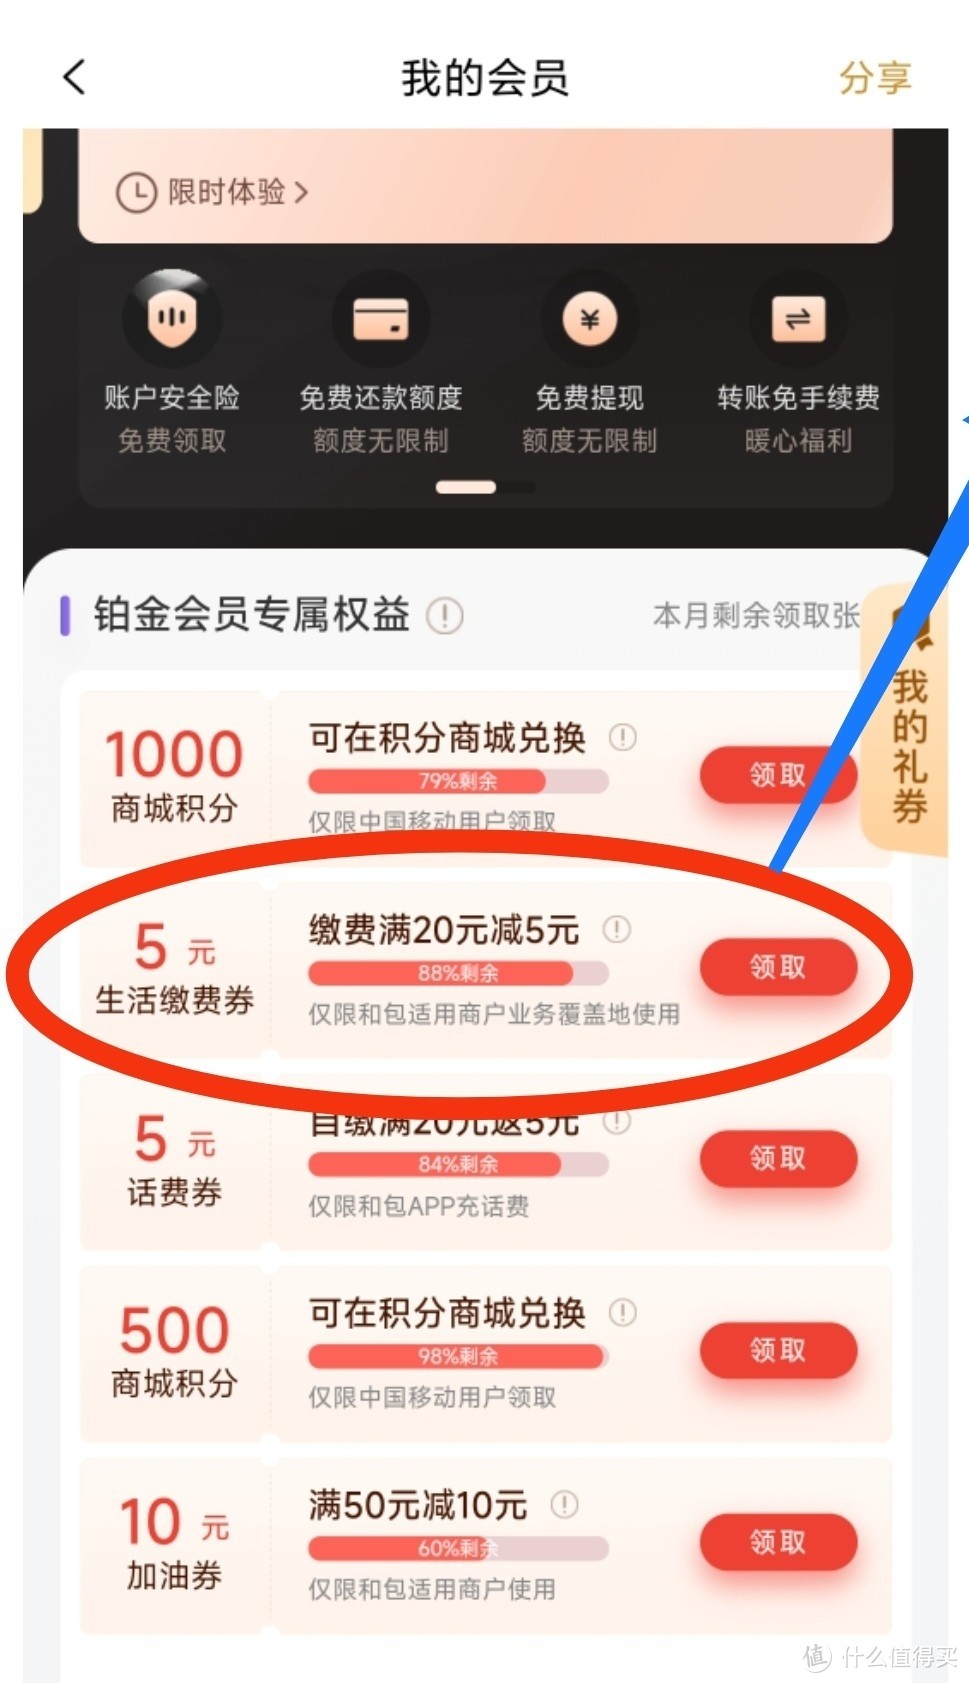 中国移动又在送10元话费了！免费领1000积分兑话费！